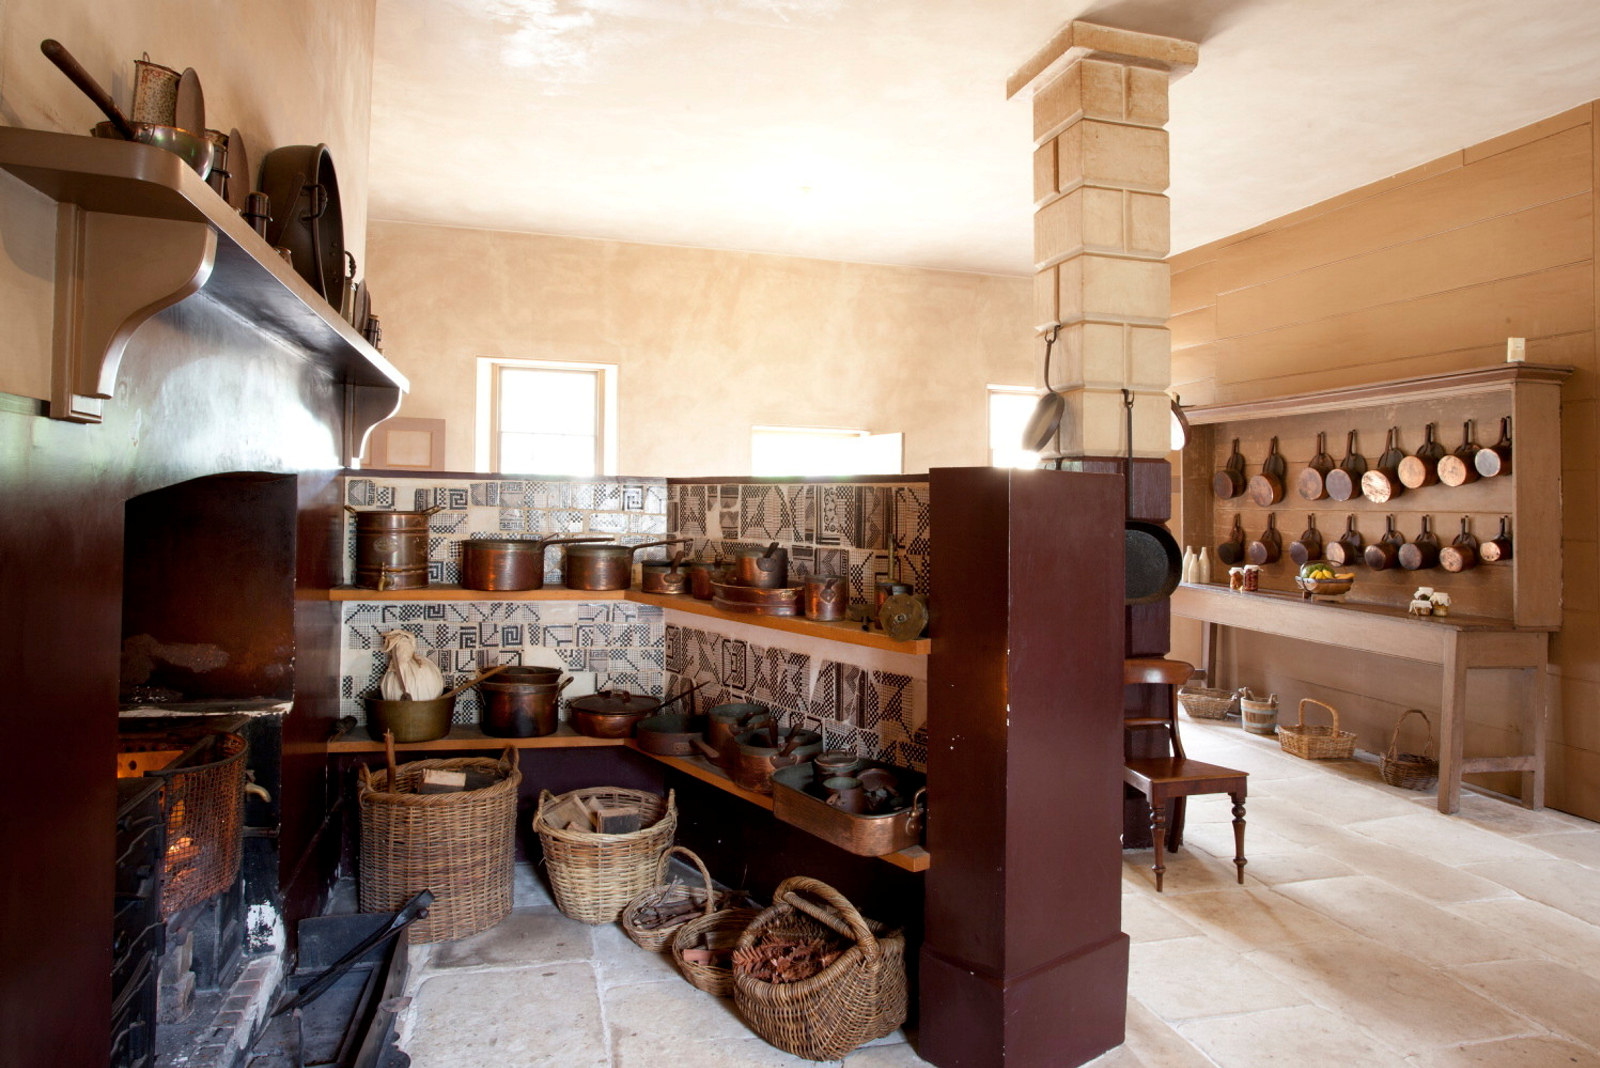 Kitchen, Vaucluse House